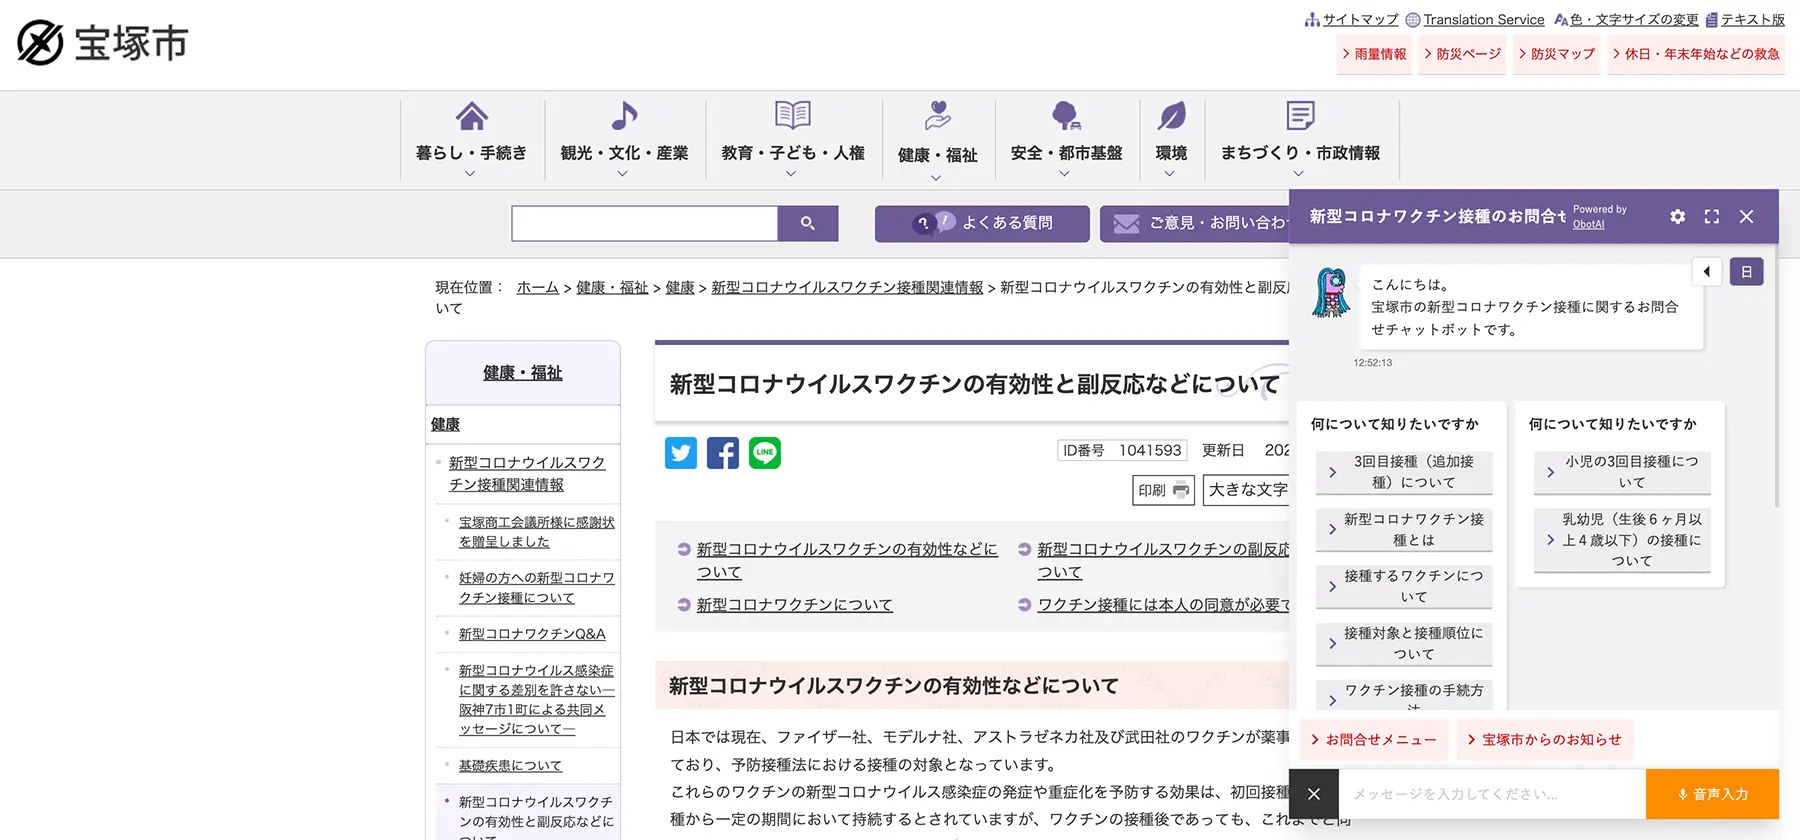 兵庫県宝塚市公式WEBサイト内ページ「新型コロナウイルスワクチン接種関連情報について」